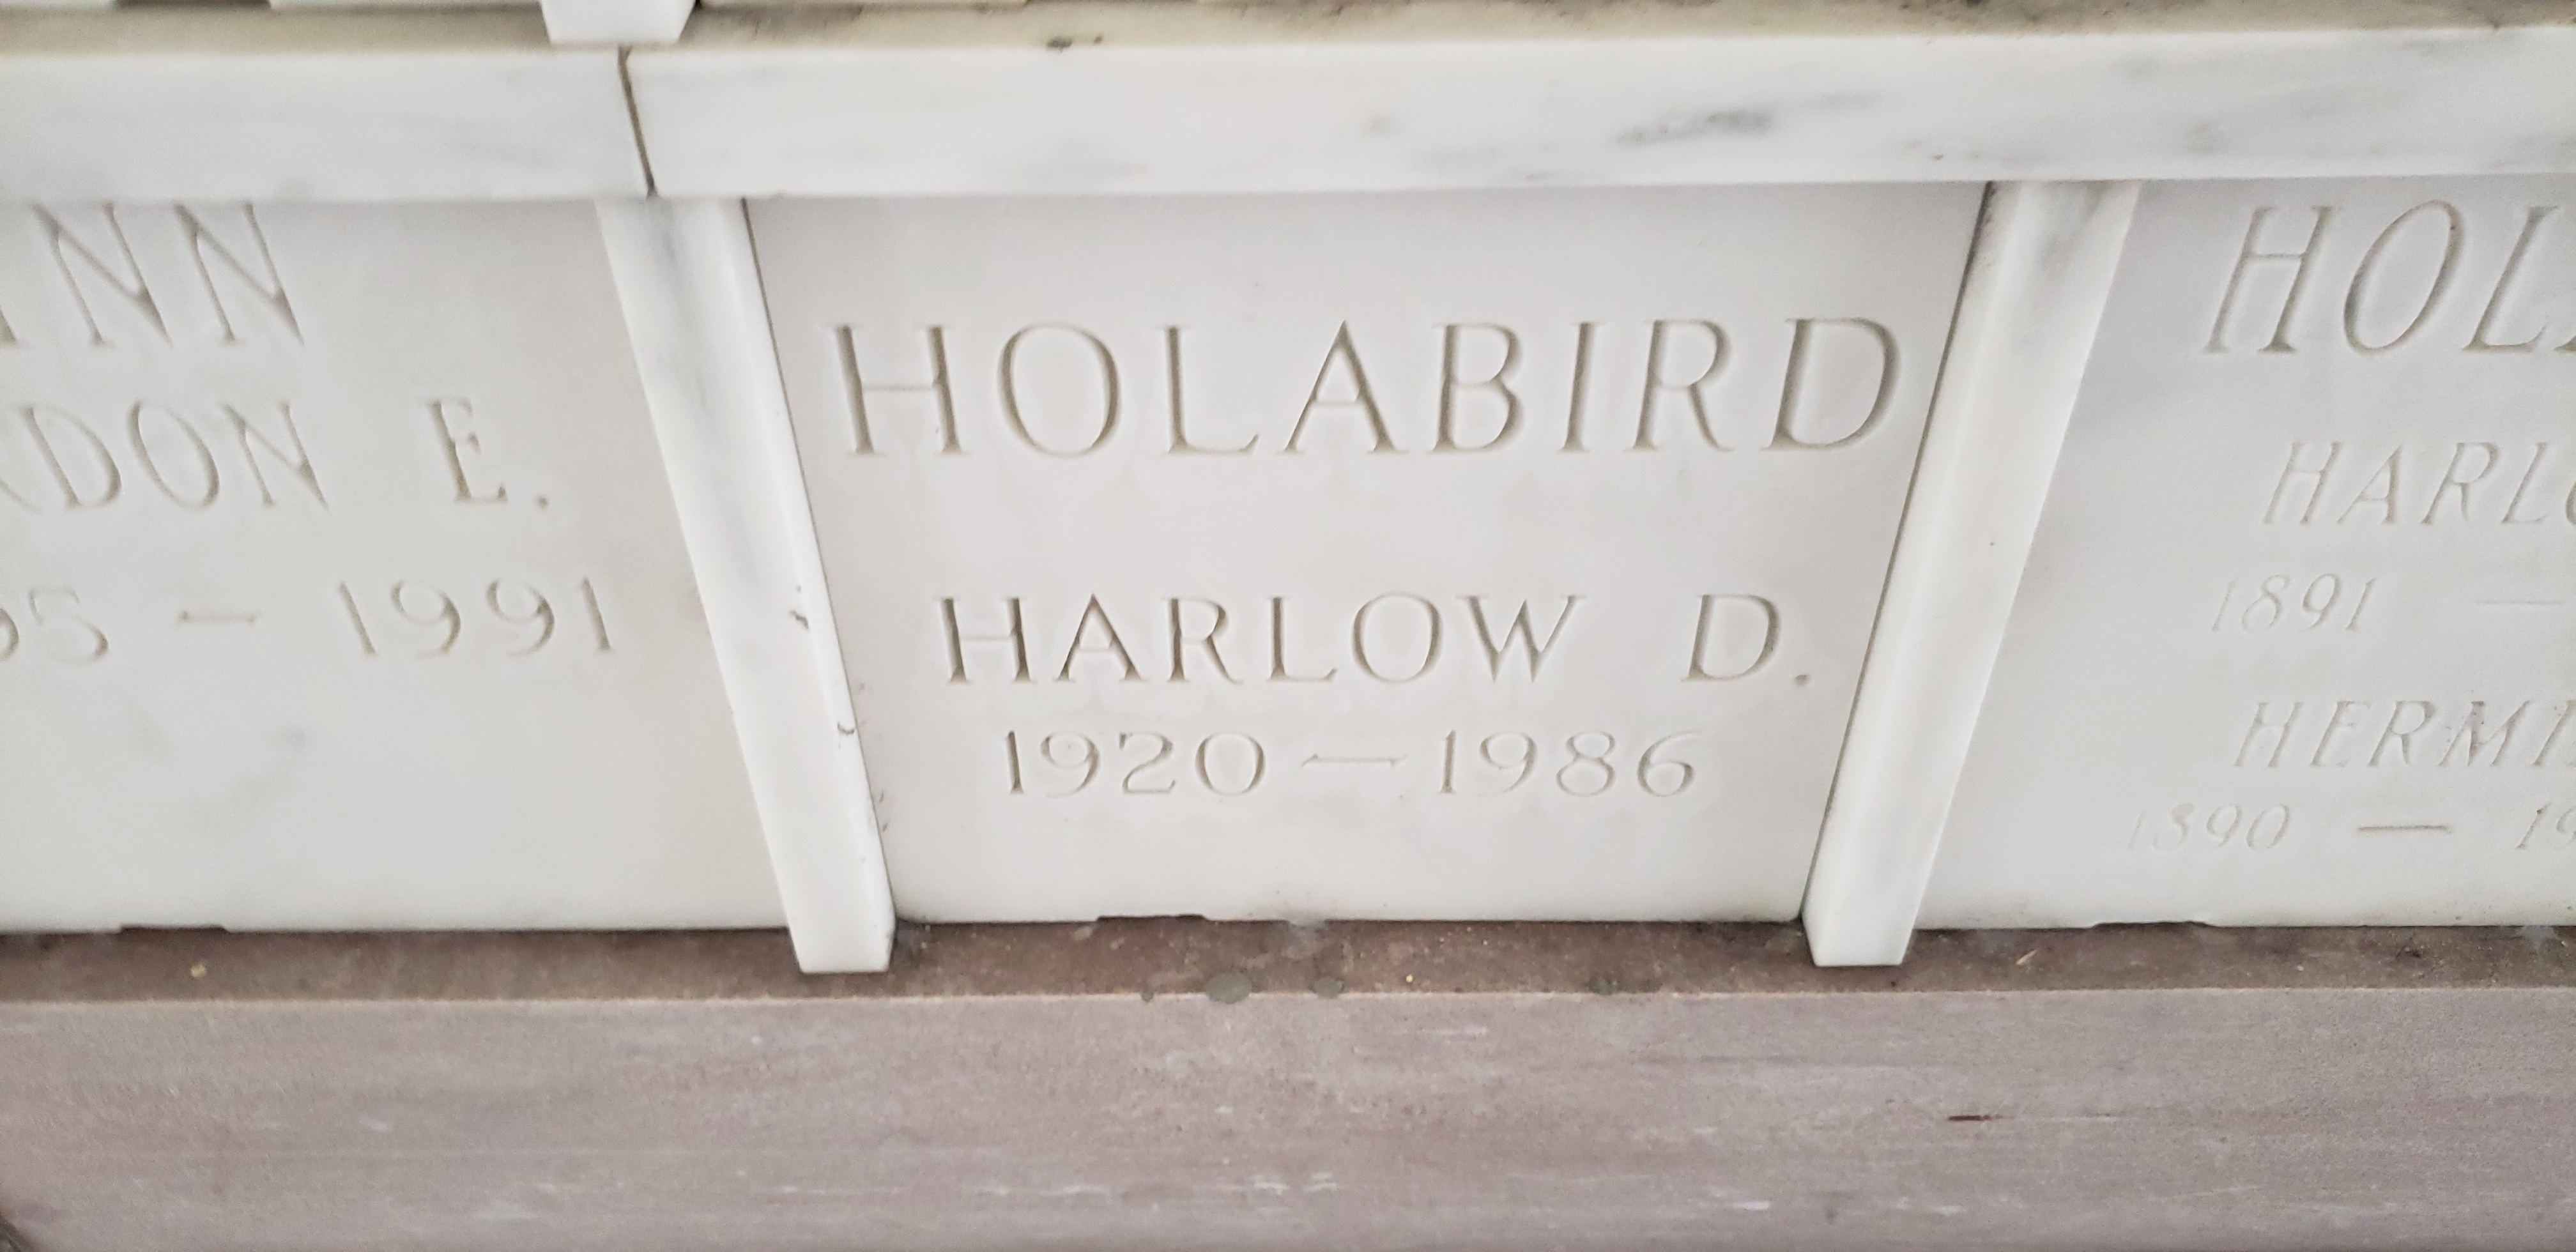 Harlow D Holabird